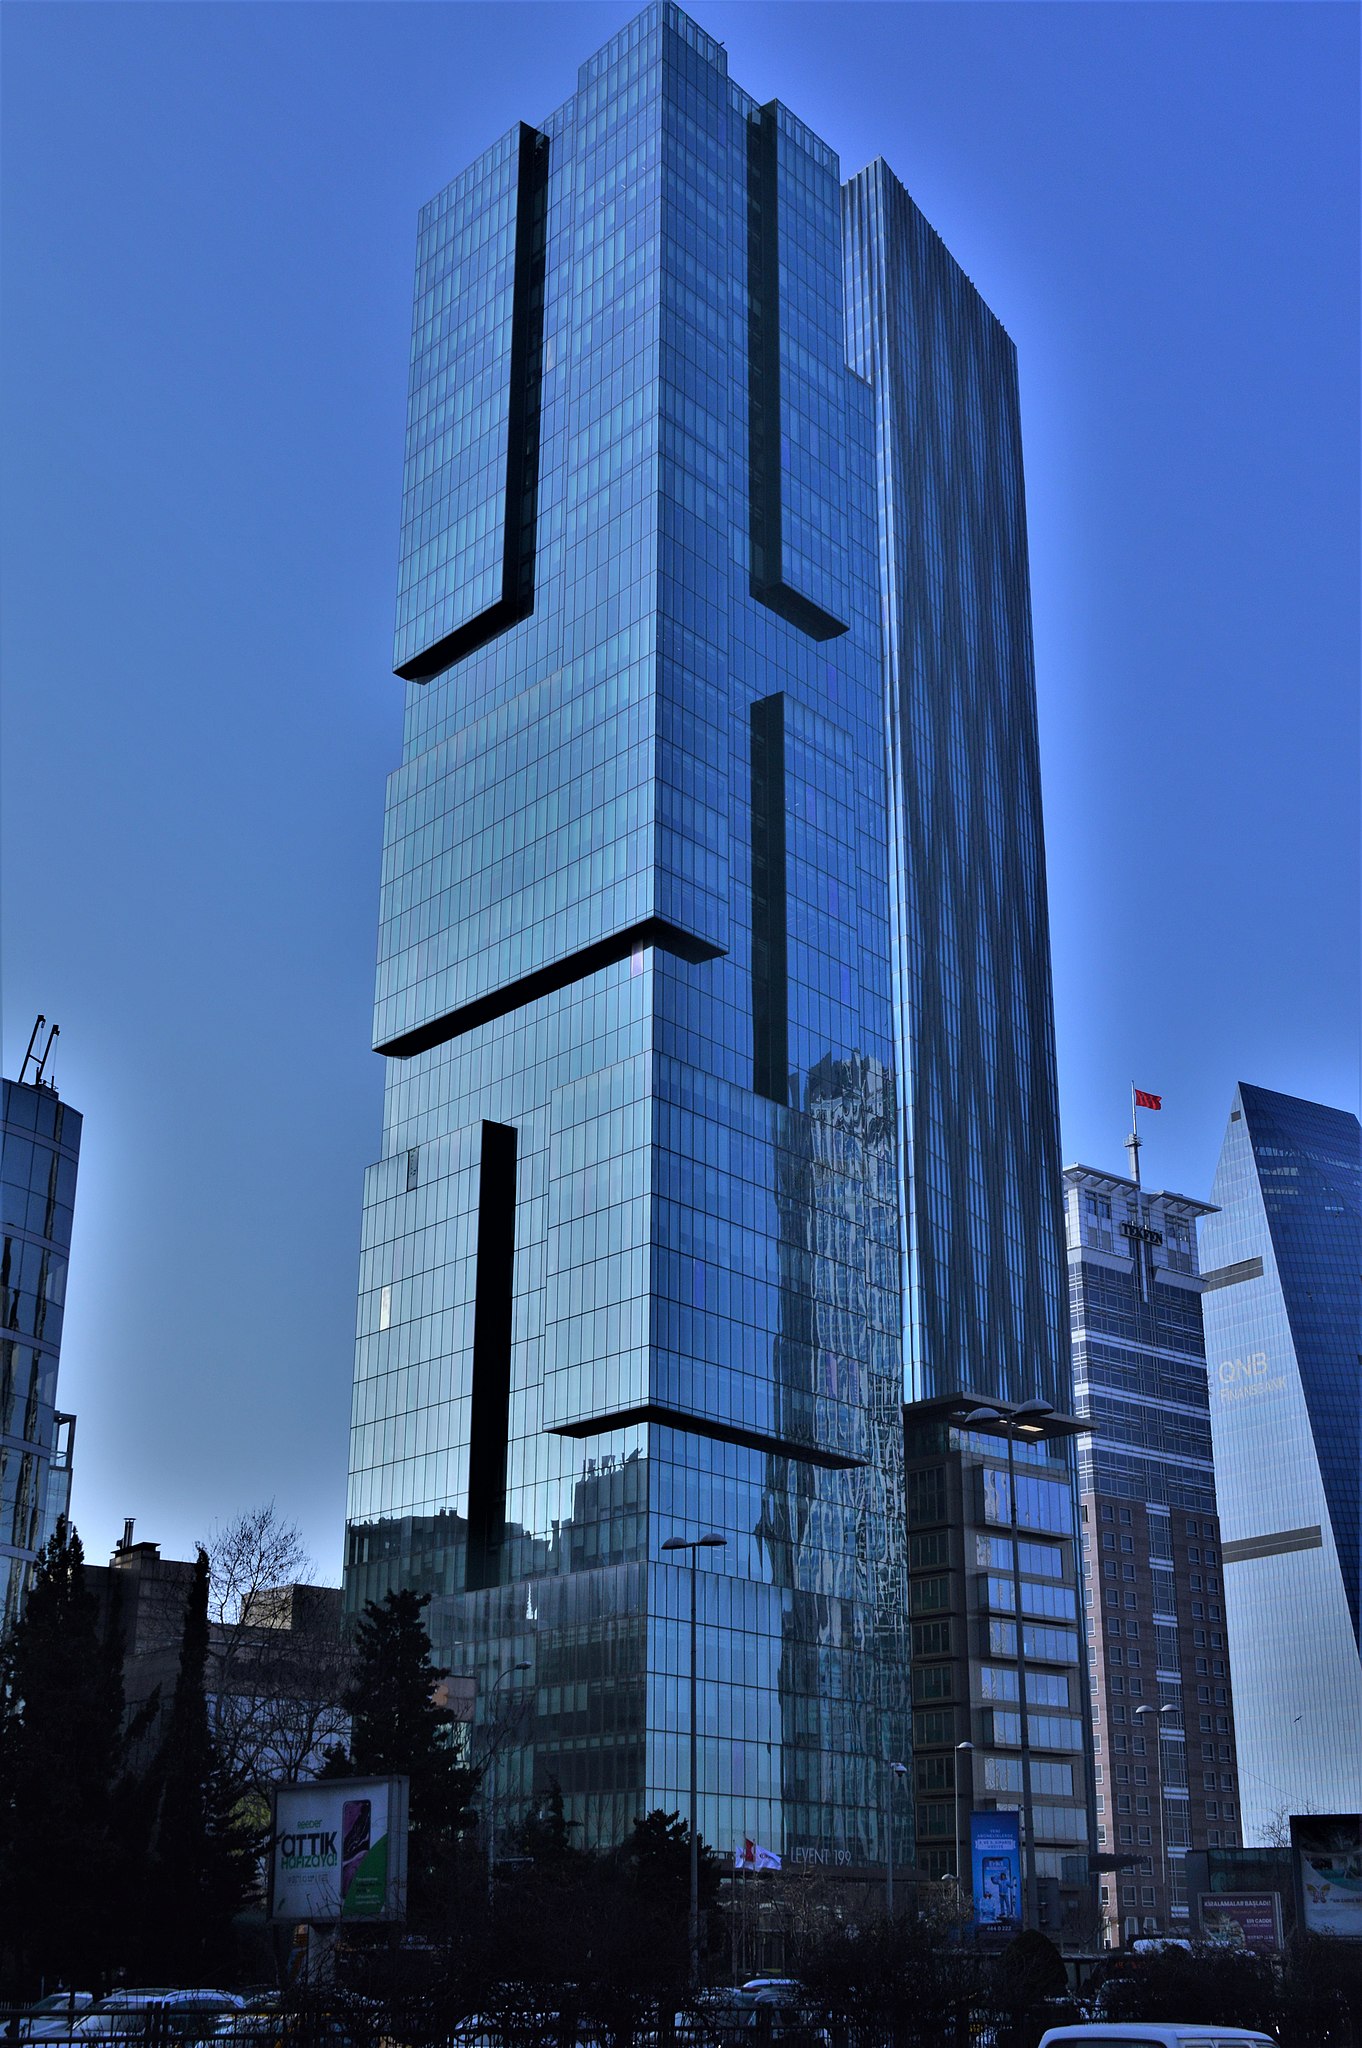 A Balkán 10 legmagasabb épülete